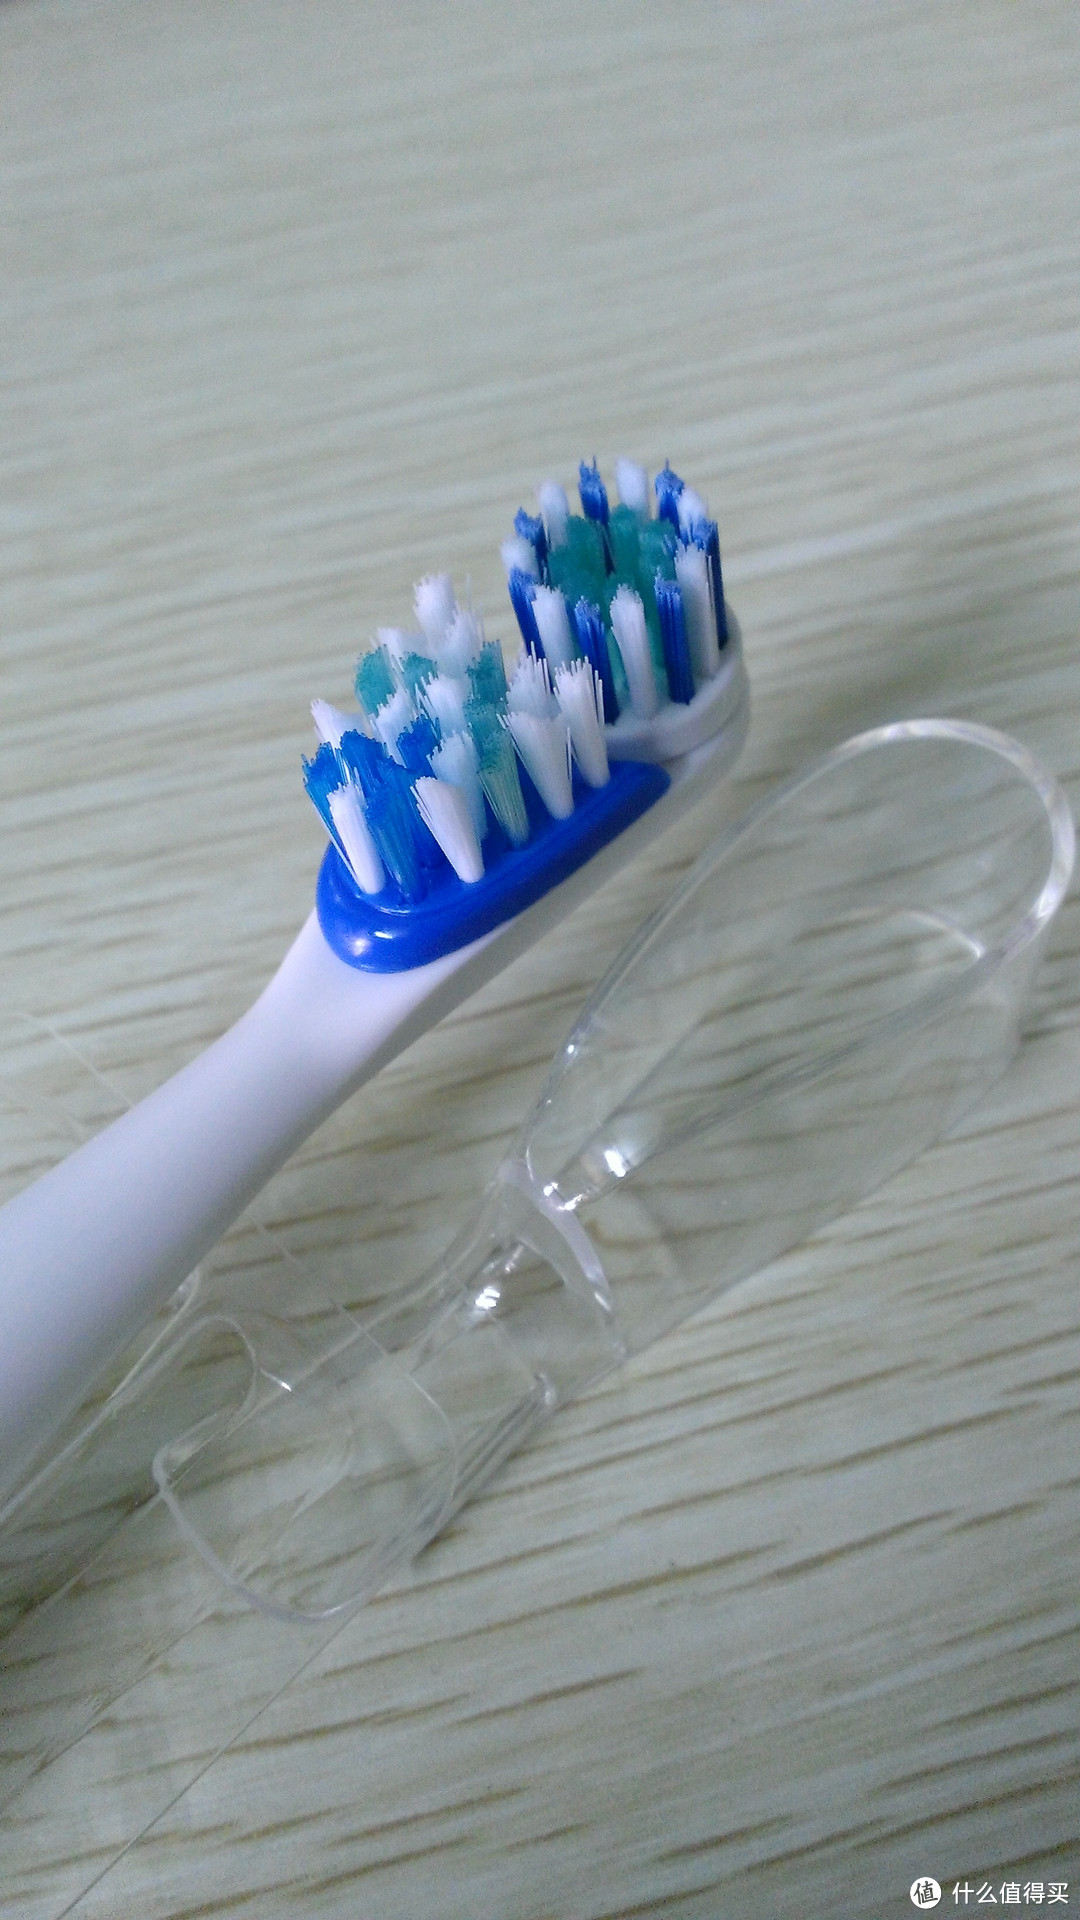 ARM & HAMMER 艾禾美 专业洁白型 牙膏&牙刷试用报告